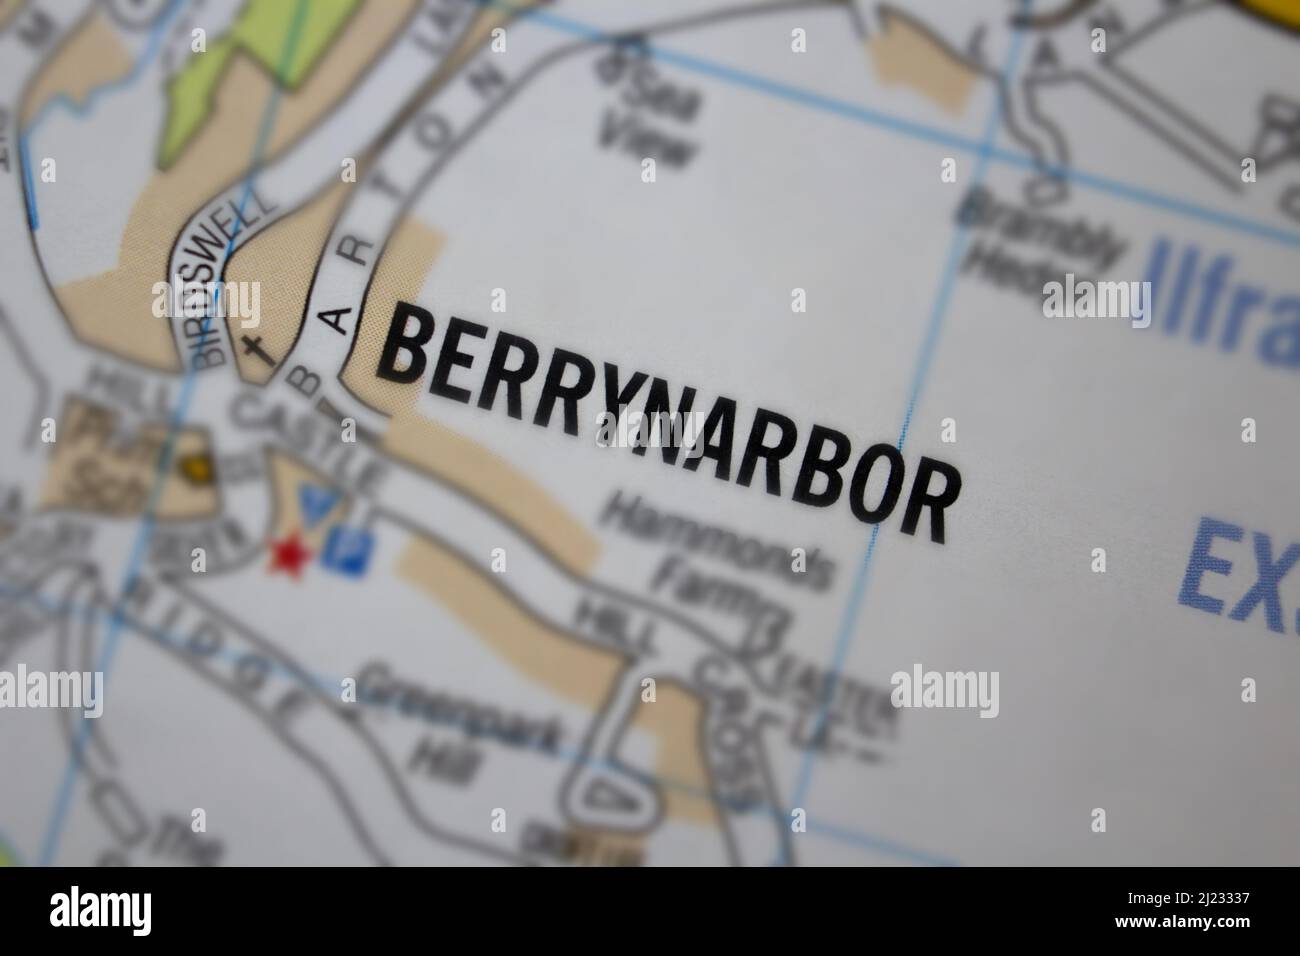 Berrynarbor village - Devon, United Kingdom colour atlas map town name Stock Photo